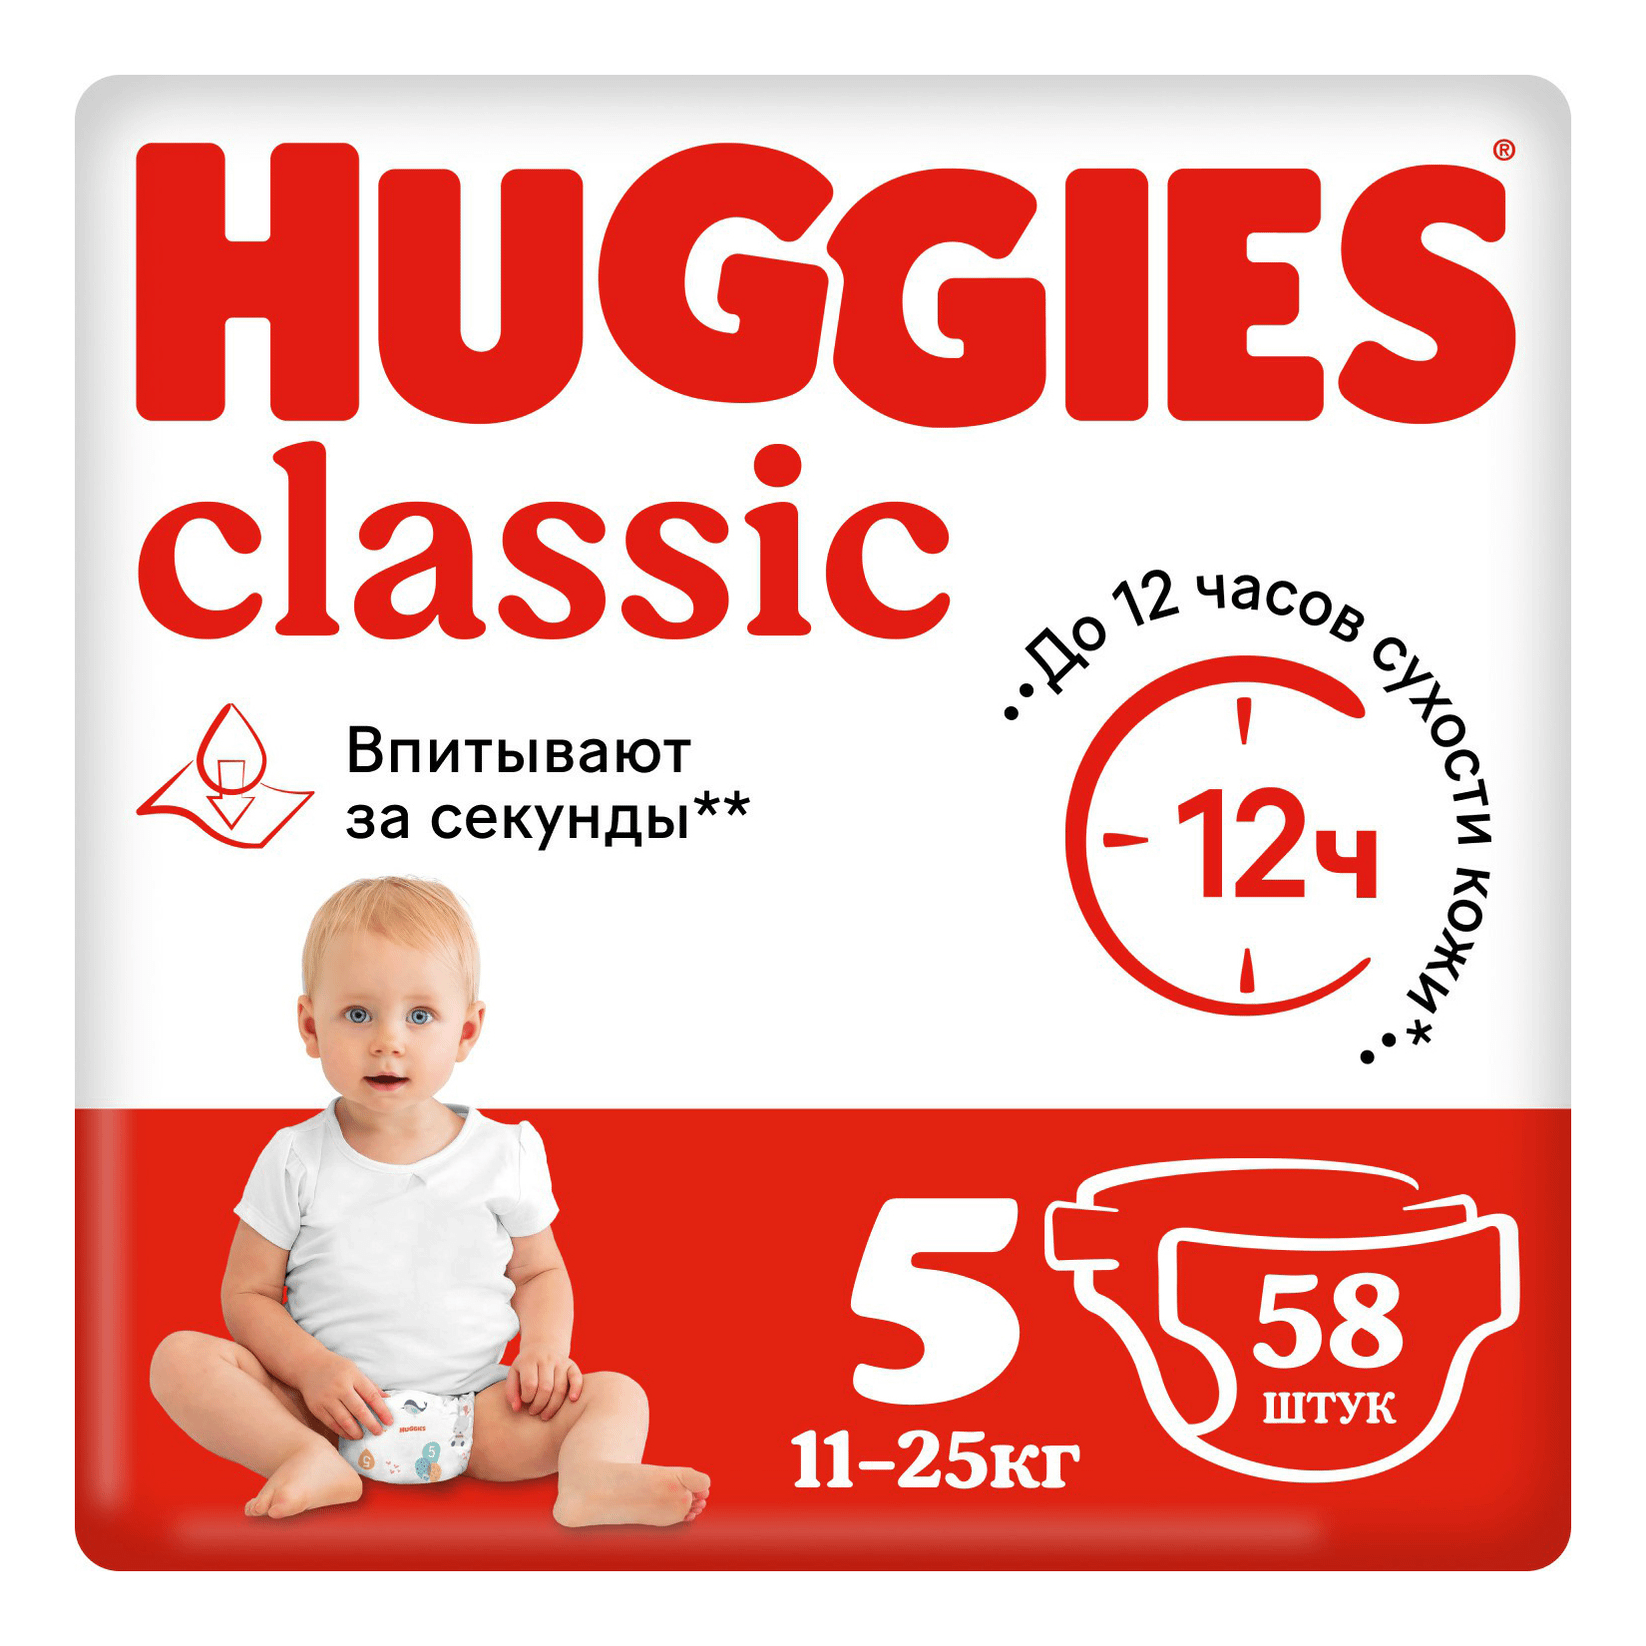 Подгузники Huggies Classic 5 (11-25 кг), 58 шт подгузники huggies classic 4 7 18 кг 13 шт